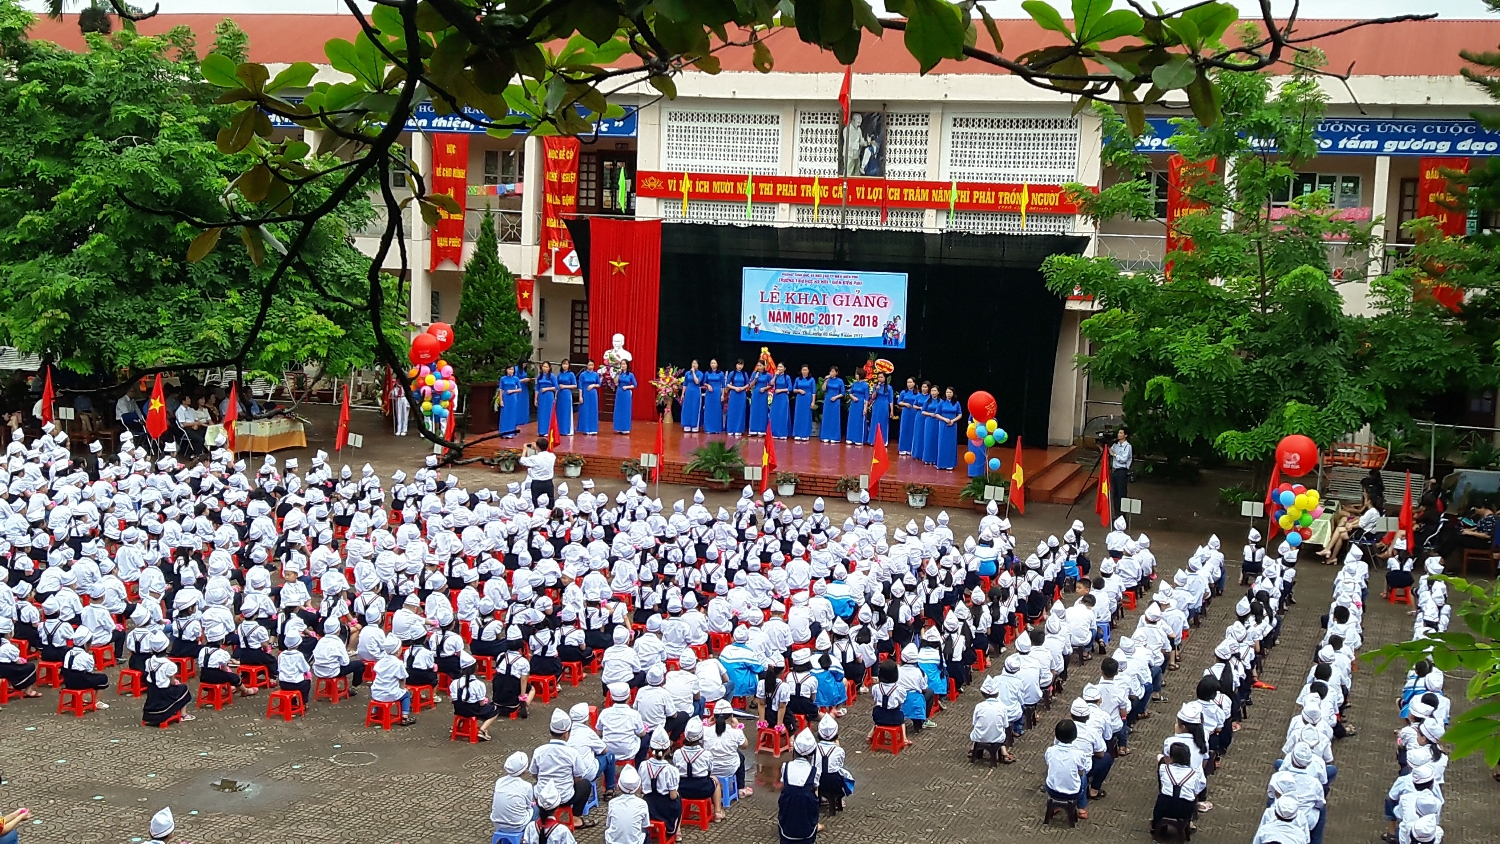 Trường Tiểu học Hà Nội -  Điện Biên Phủ tổ chức khai giảng năm học 2017 - 2018